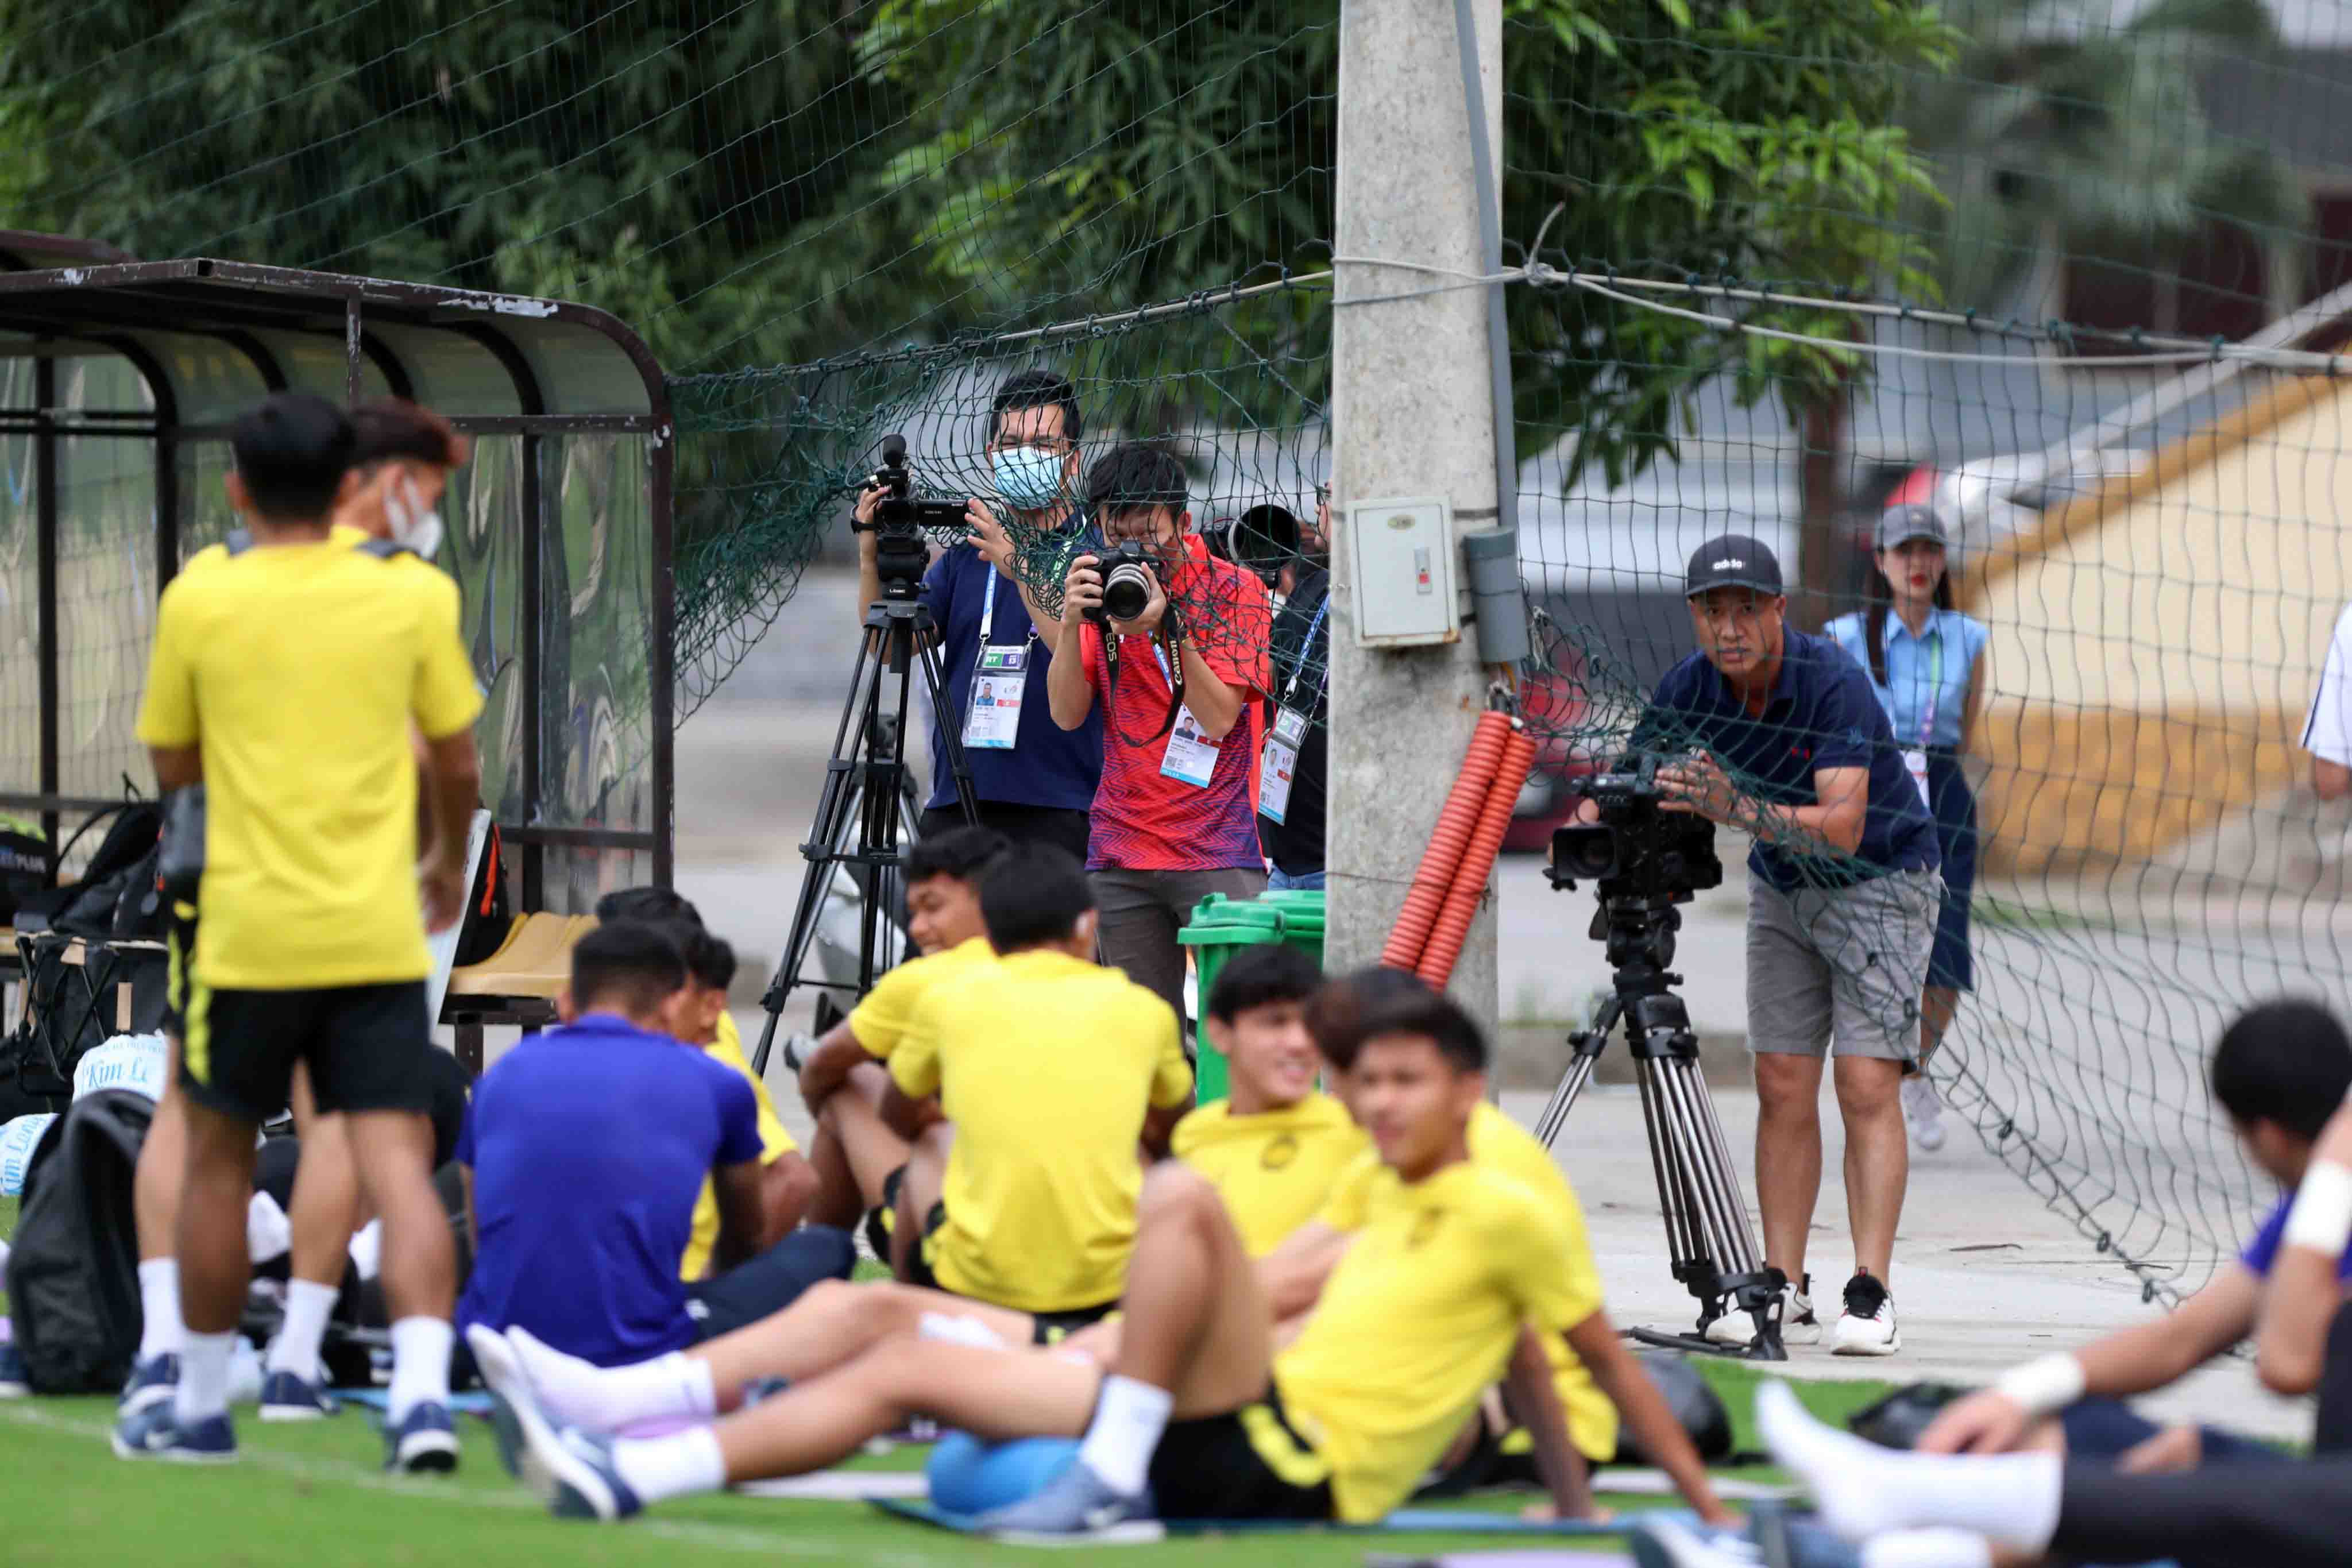 Báo chí, truyền thông Việt Nam được phép tác nghiệp trong khoảng 15 phút và được phỏng vấn riêng một cầu thủ trước buổi tập với sự cho phép thoải mái từ phía U23 Malaysia.
